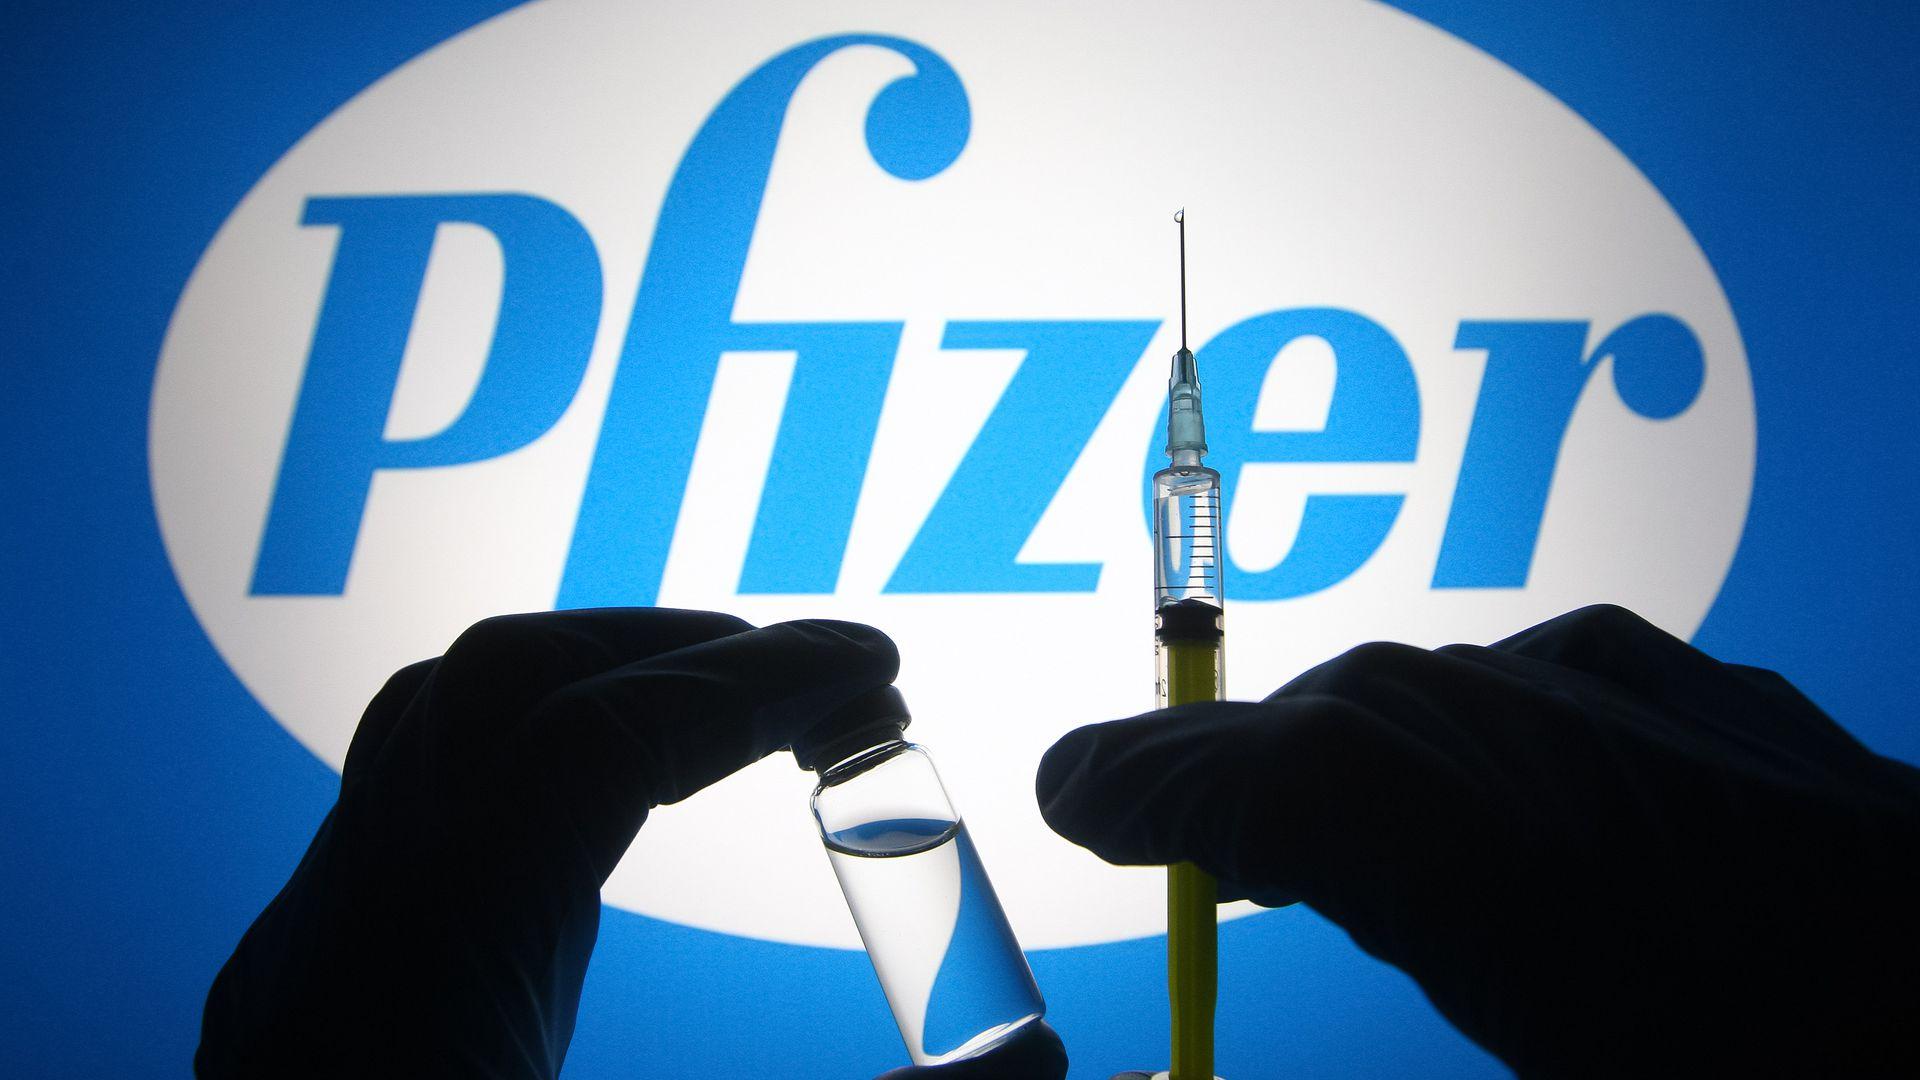 Istraživanje pokazalo da su Pfizer i Moderna najbolje vakcine za treću dozu